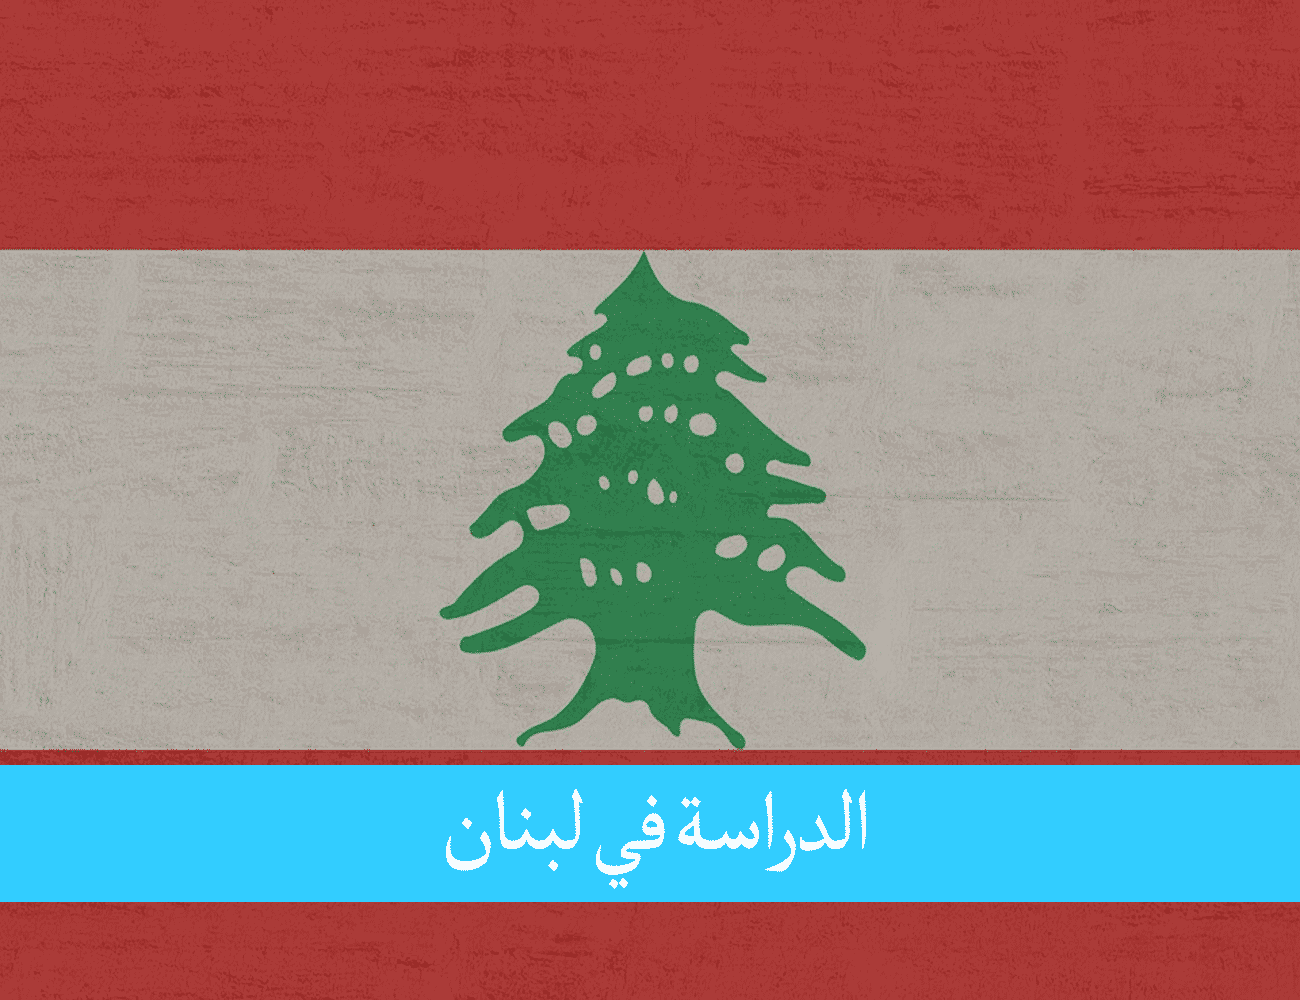 الدراسة في لبنان للمغاربة عاصمة الثقافة في الشرق الأوسط